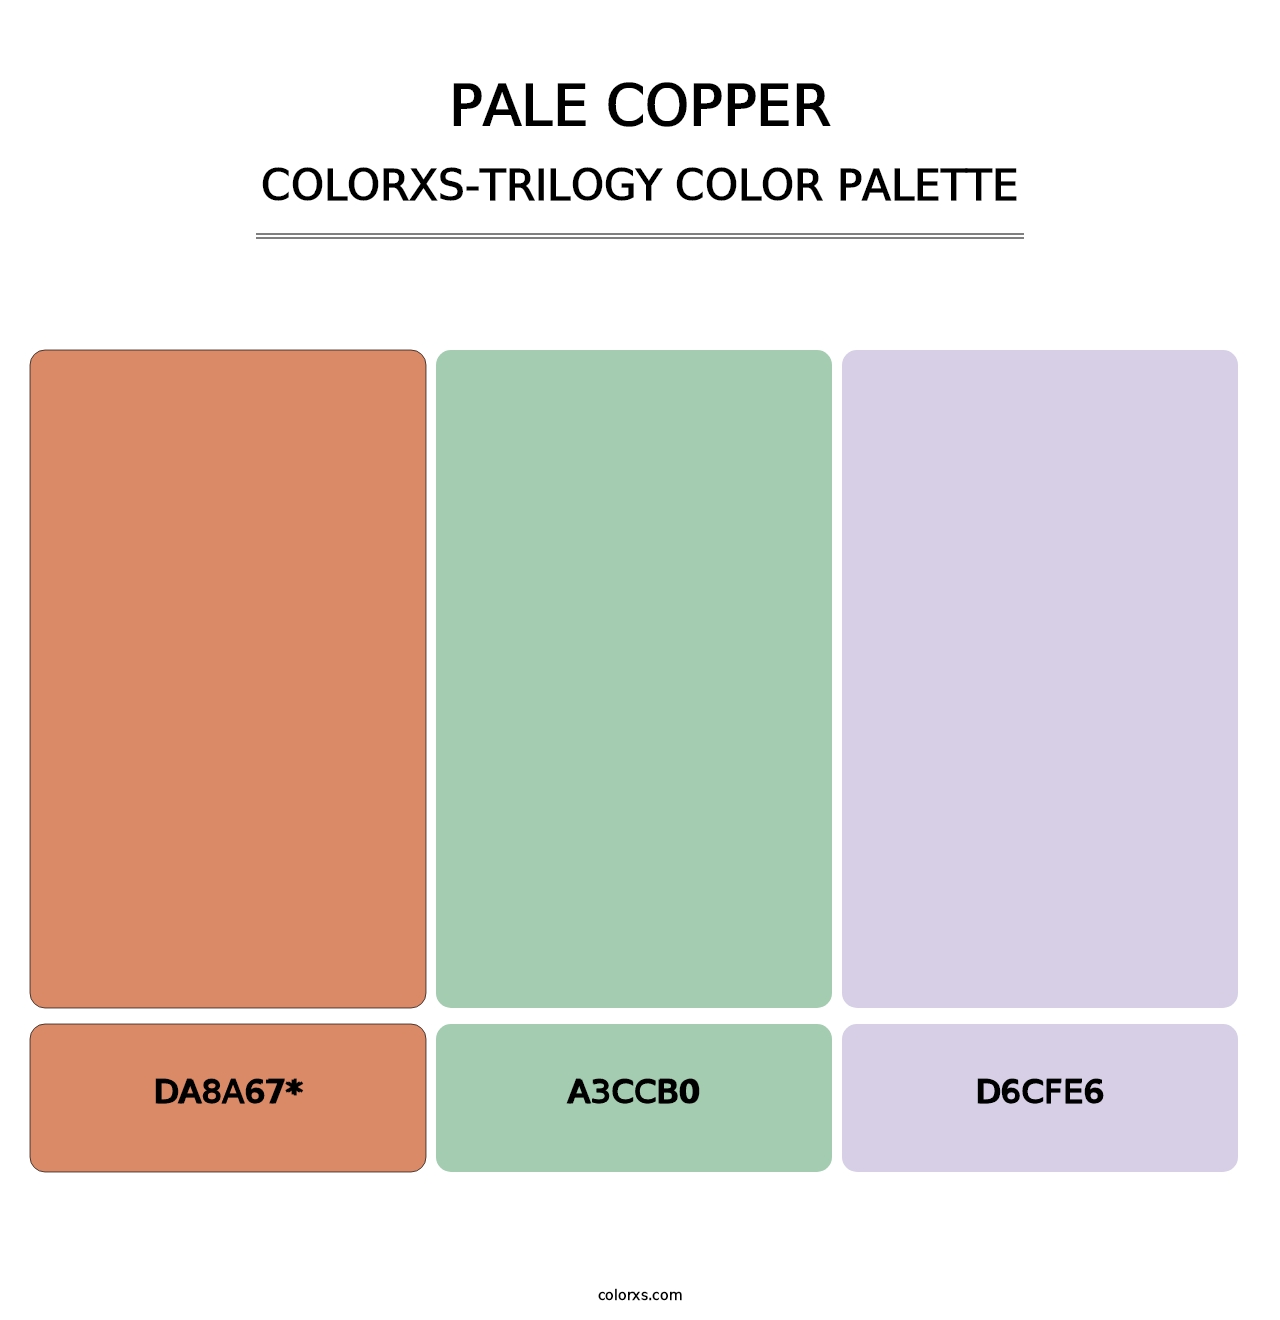 Pale Copper - Colorxs Trilogy Palette